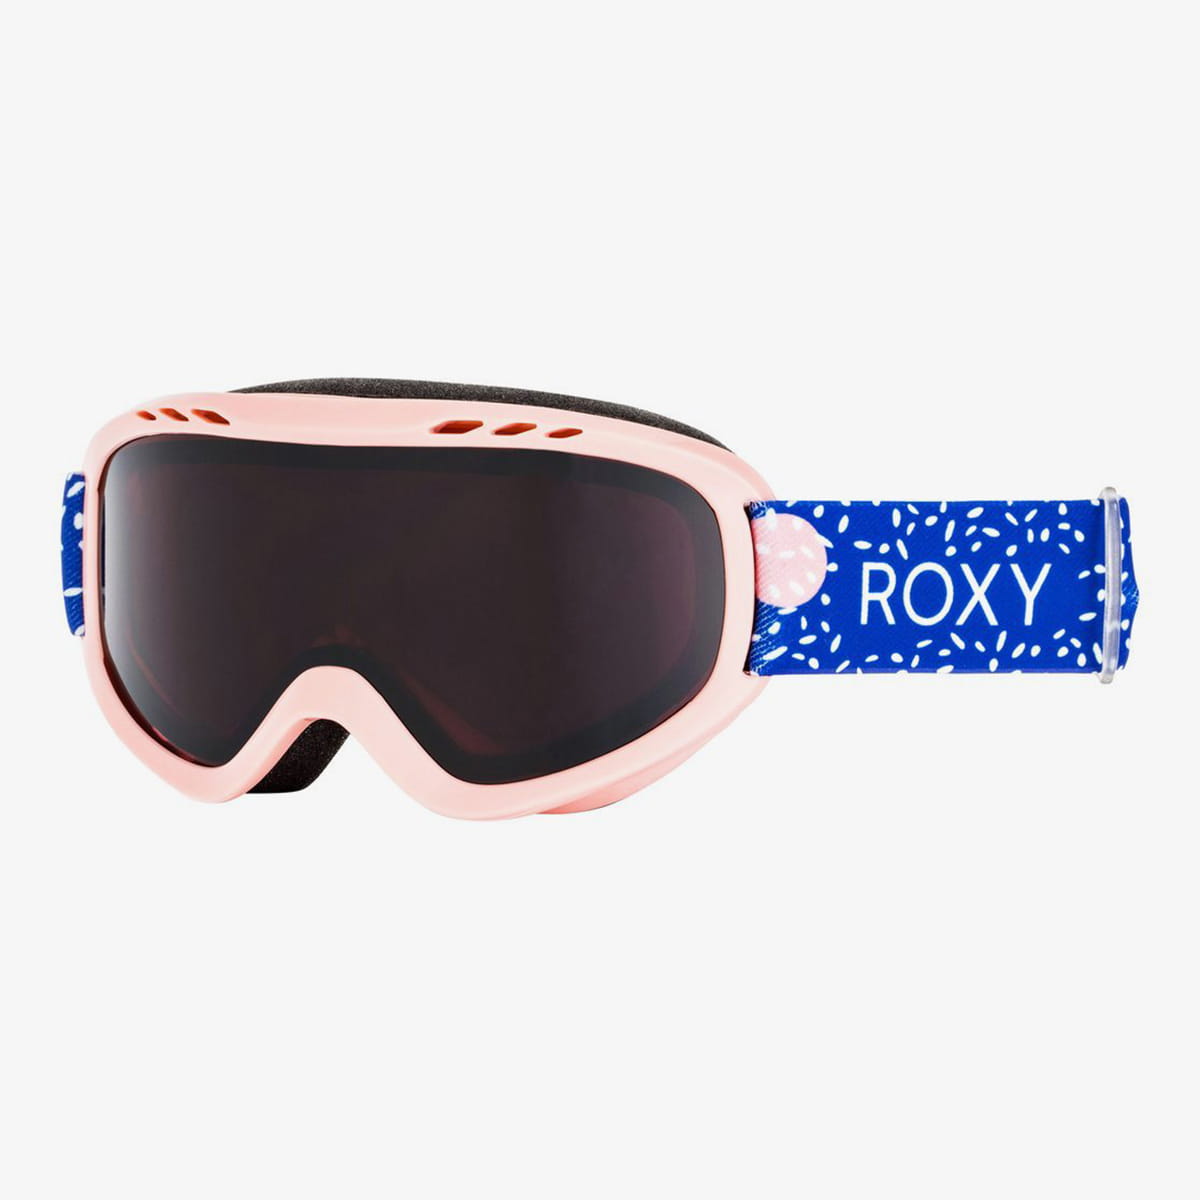 Детская маска Roxy. Сноубордическая маска Roxy розовая. Roxy Mint Goggles. Blue Roxy 7ds. Мужские маски и линзы roxy